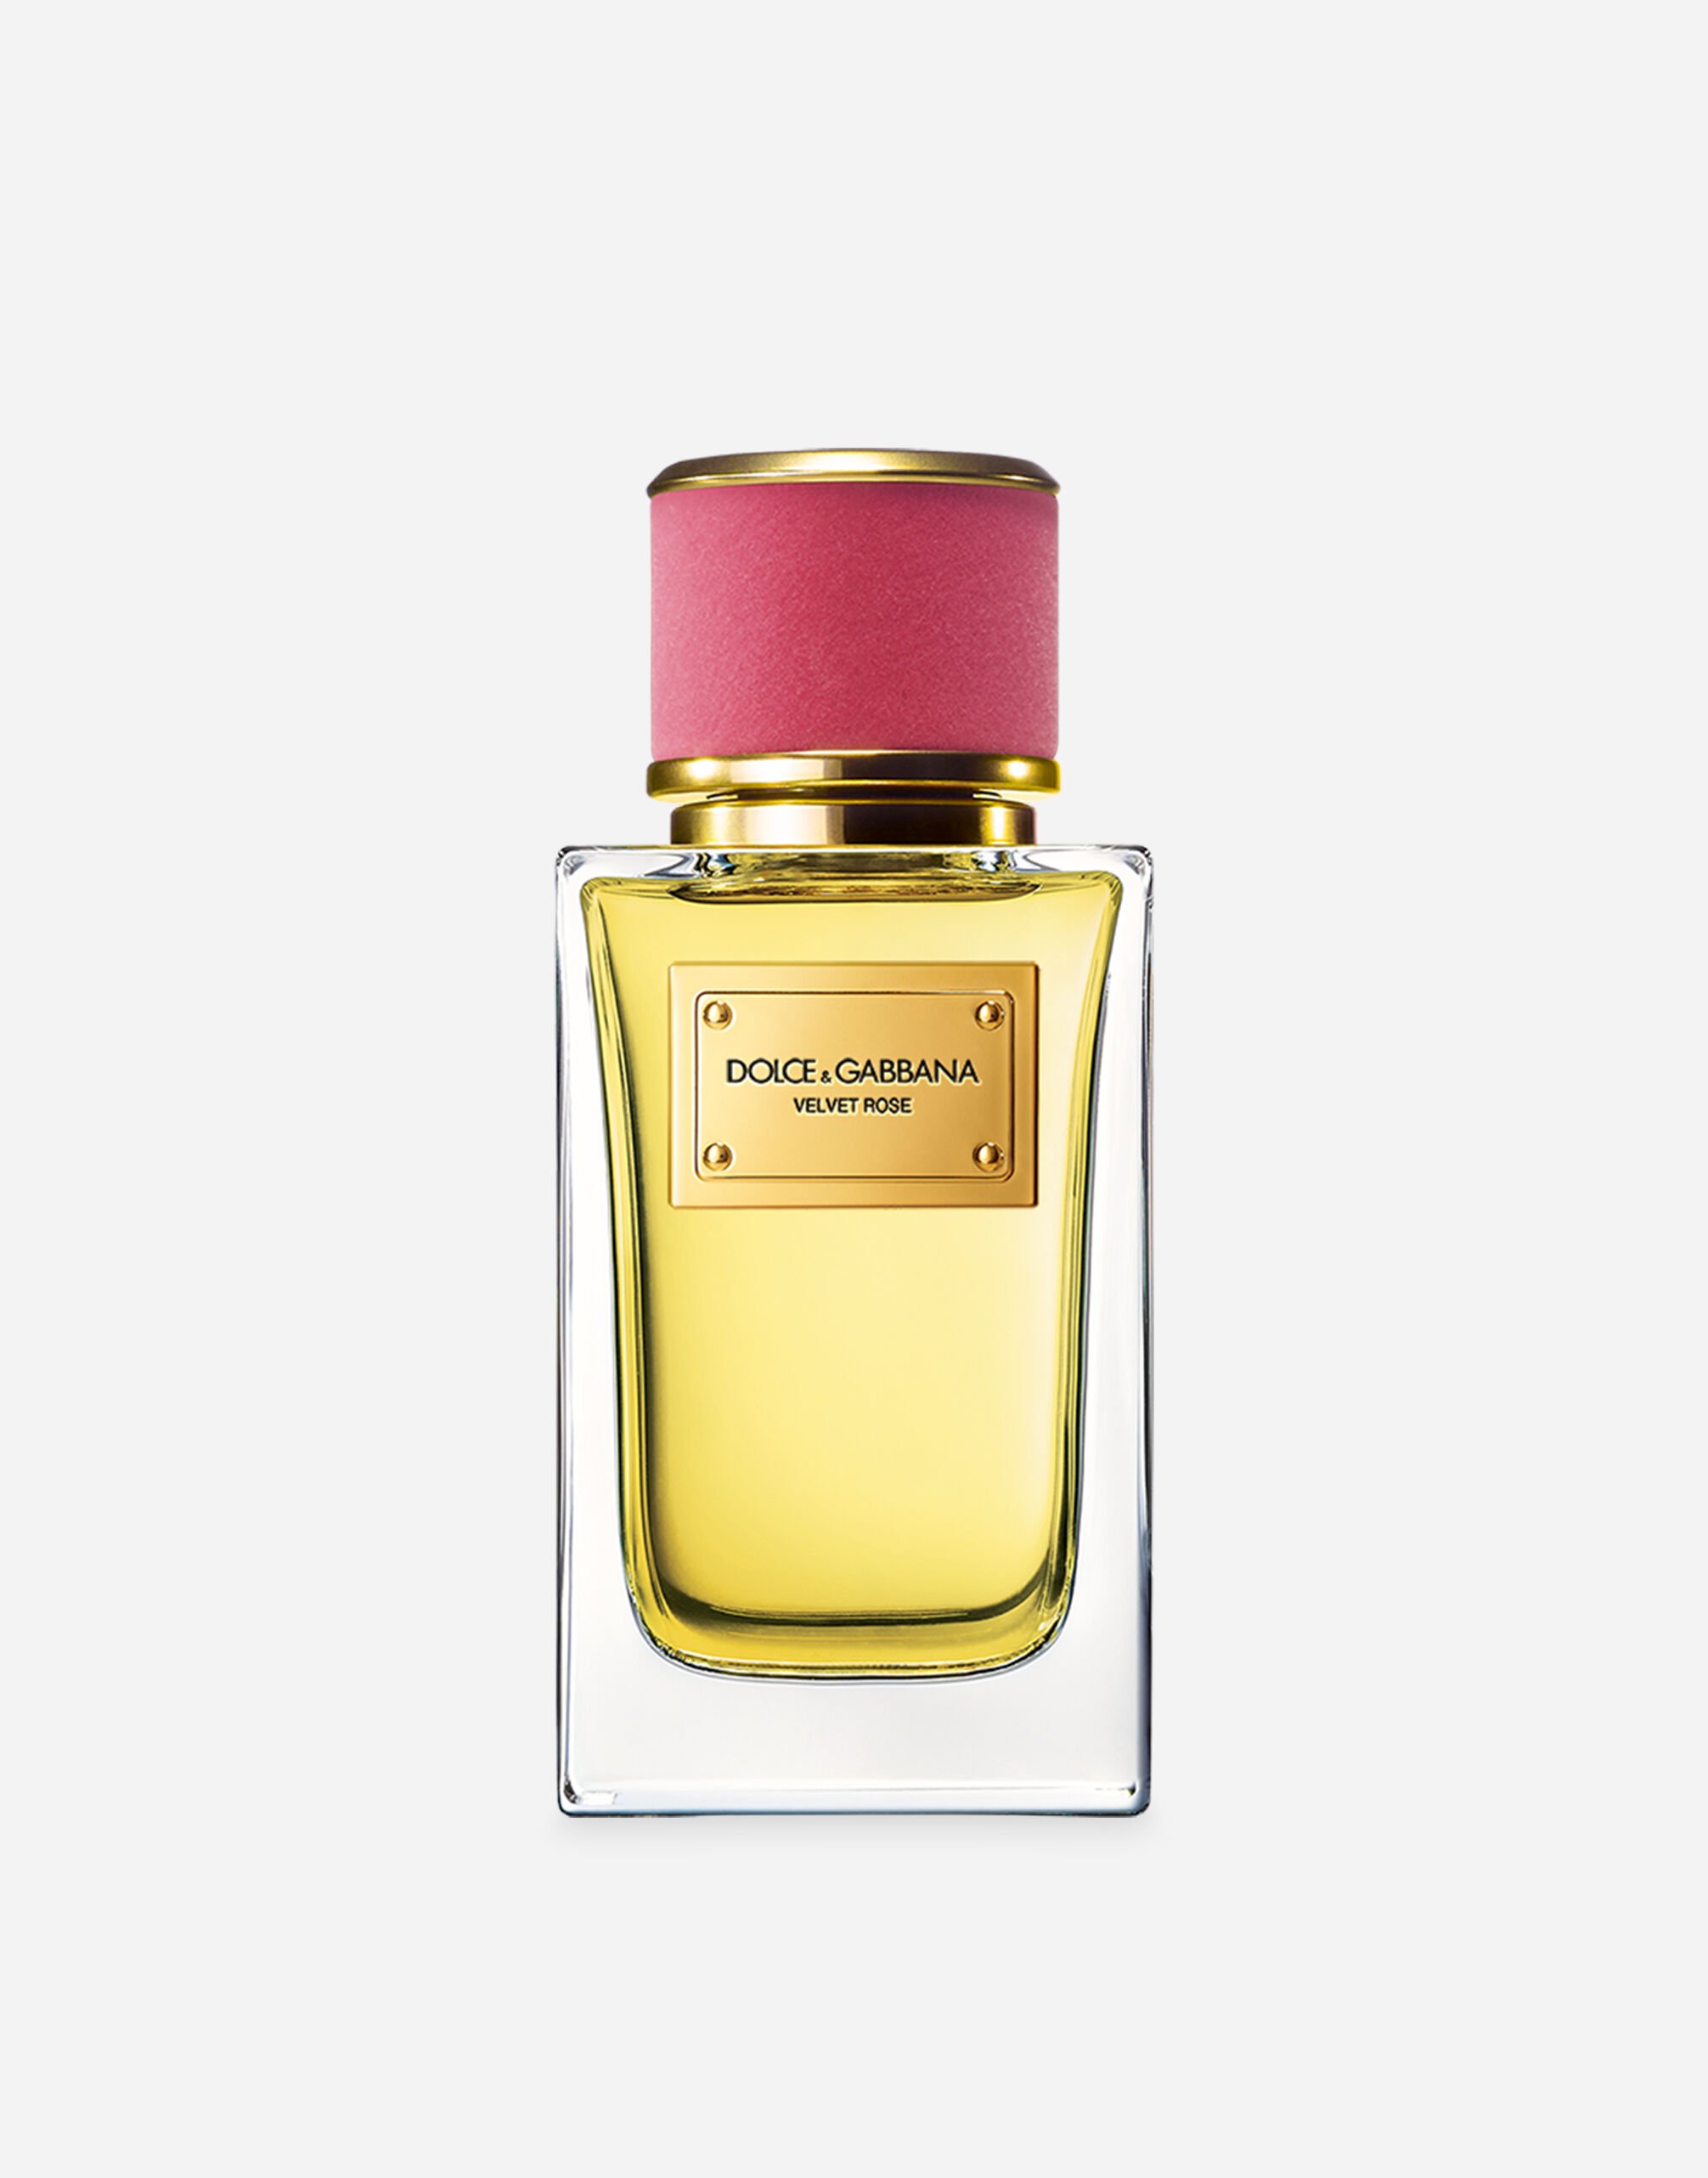 Dolce & Gabbana Velvet Rose Eau de Parfum - VP003HVP000